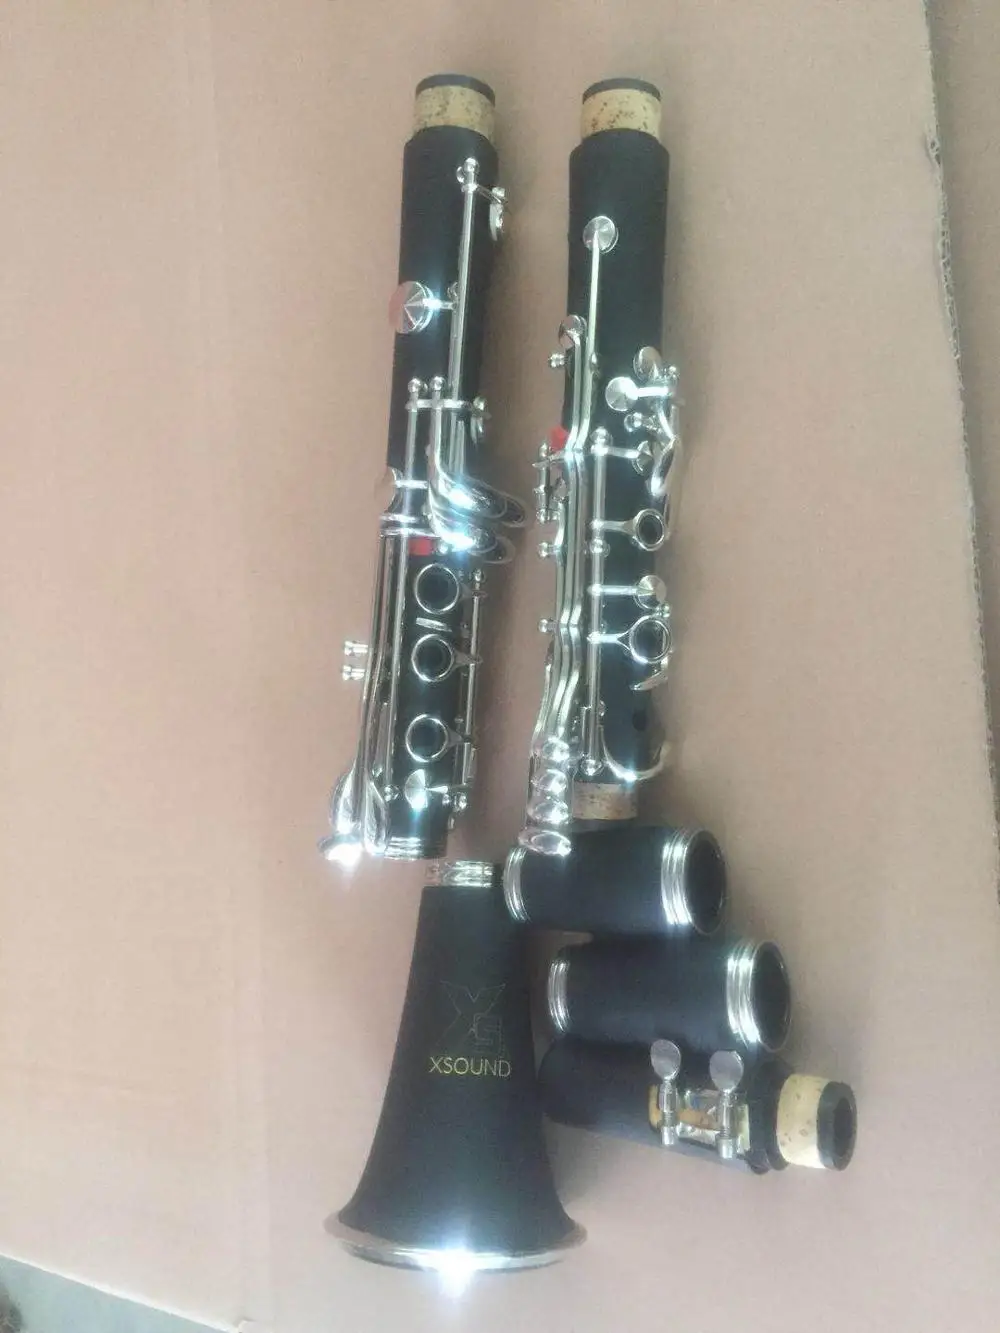 
Высокое качество, хорошая цена, C Ключ, духовой инструмент, кларнет ABC1301/1301RW 